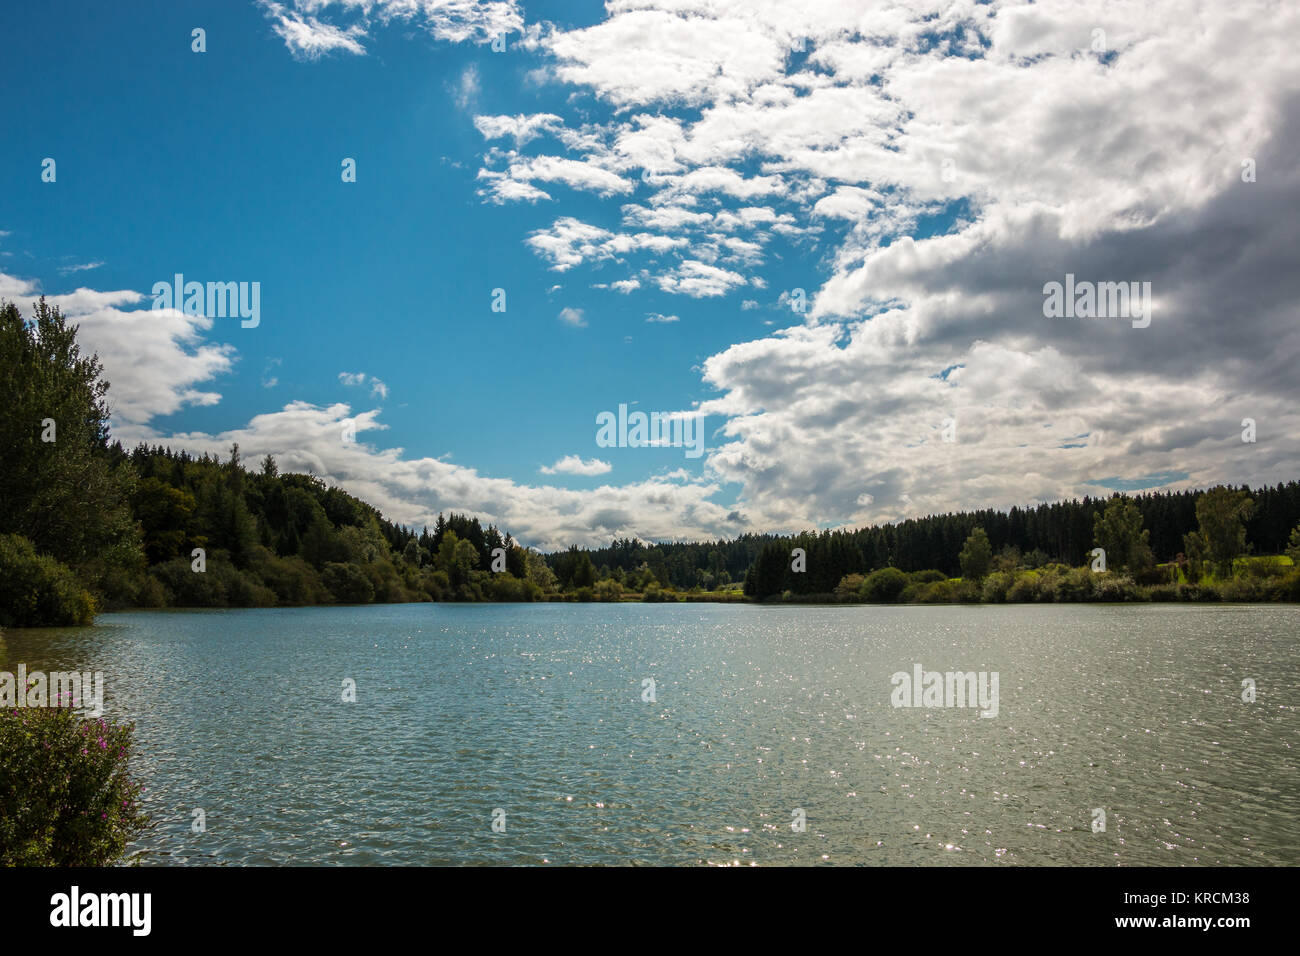 Lac solitaire avec reflets dans l'eau et les forêts autour de et ciel bleu avec des nuages Banque D'Images